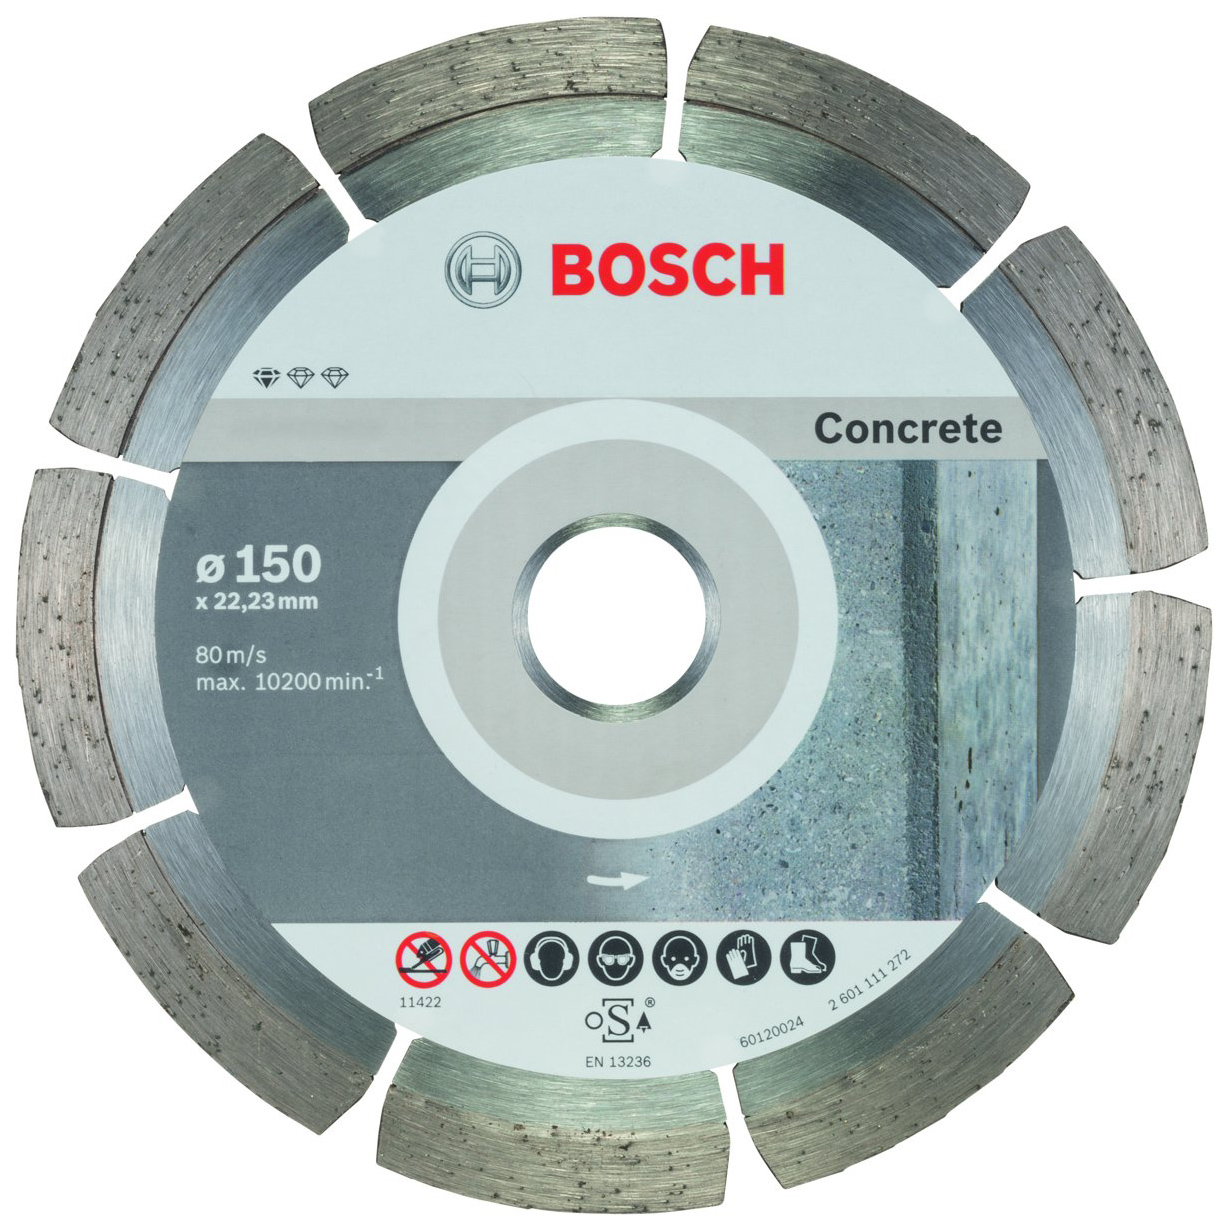 Диск отрезной алмазный Bosch Stnd Concrete 10 шт 150мм 2608603241 диск алмазный solga diamant basic сегментный железобетон 150мм 22 23